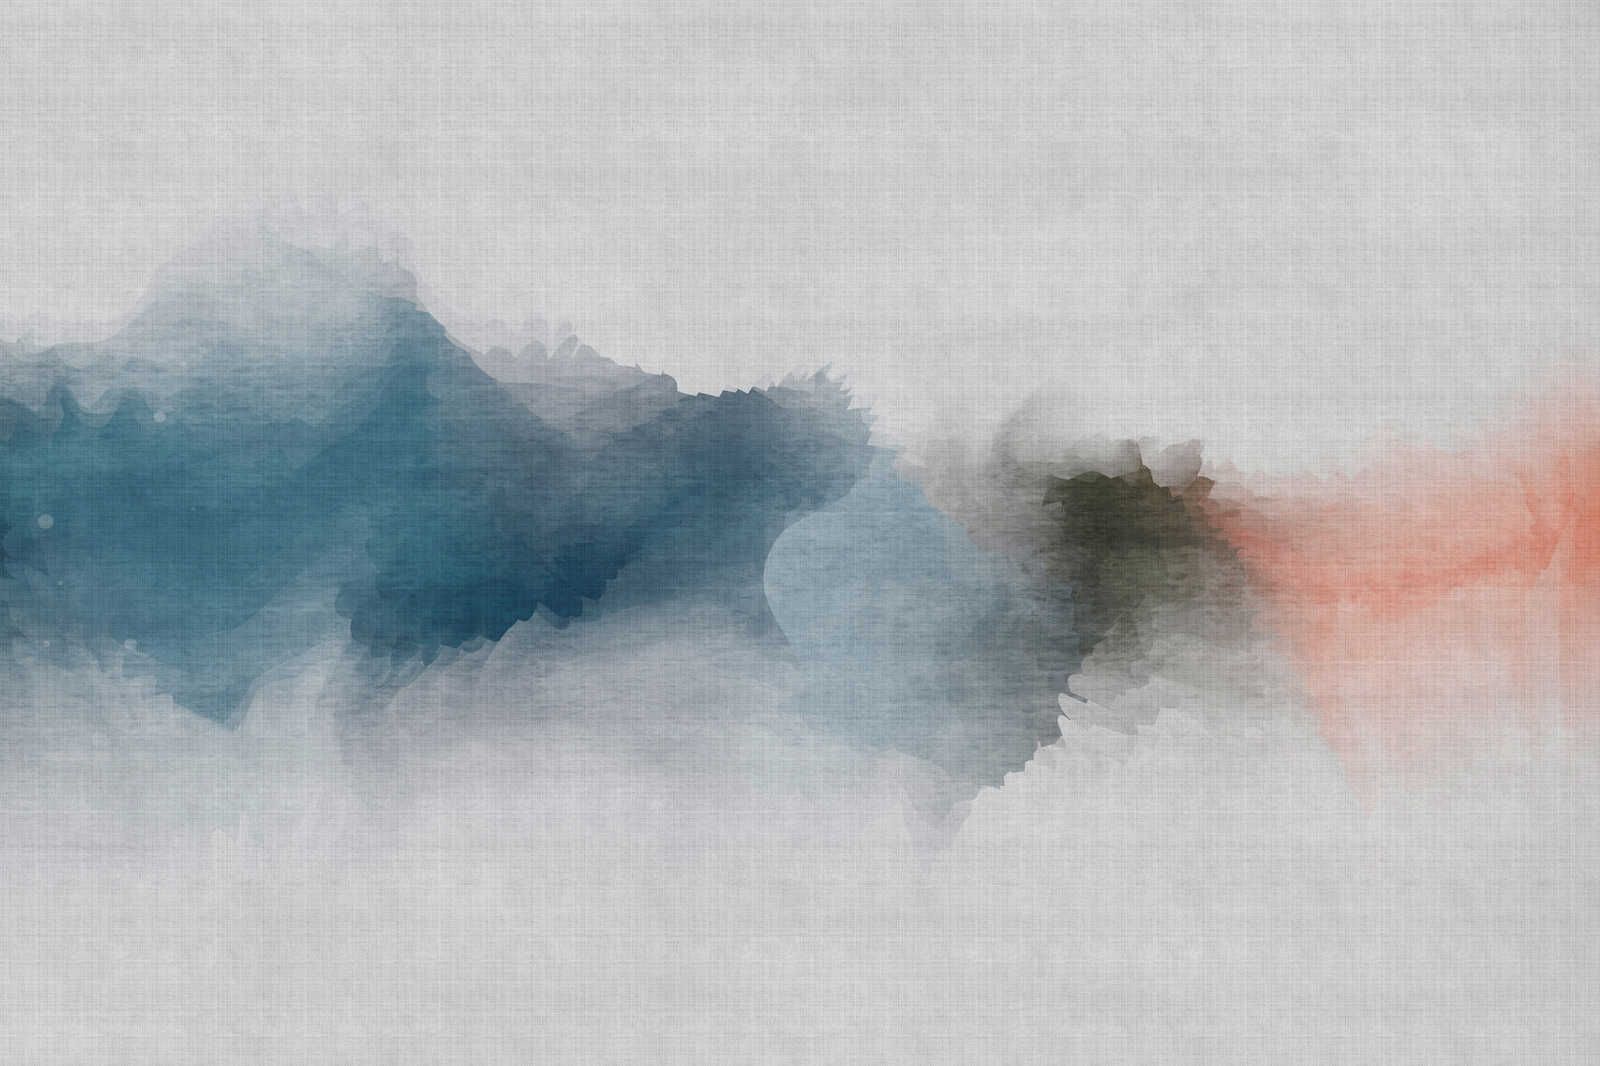             Daydream 1 - Minimalistisches Leinwandbild im Aquarell Stil- Naturleinen Optik – 1,20 m x 0,80 m
        